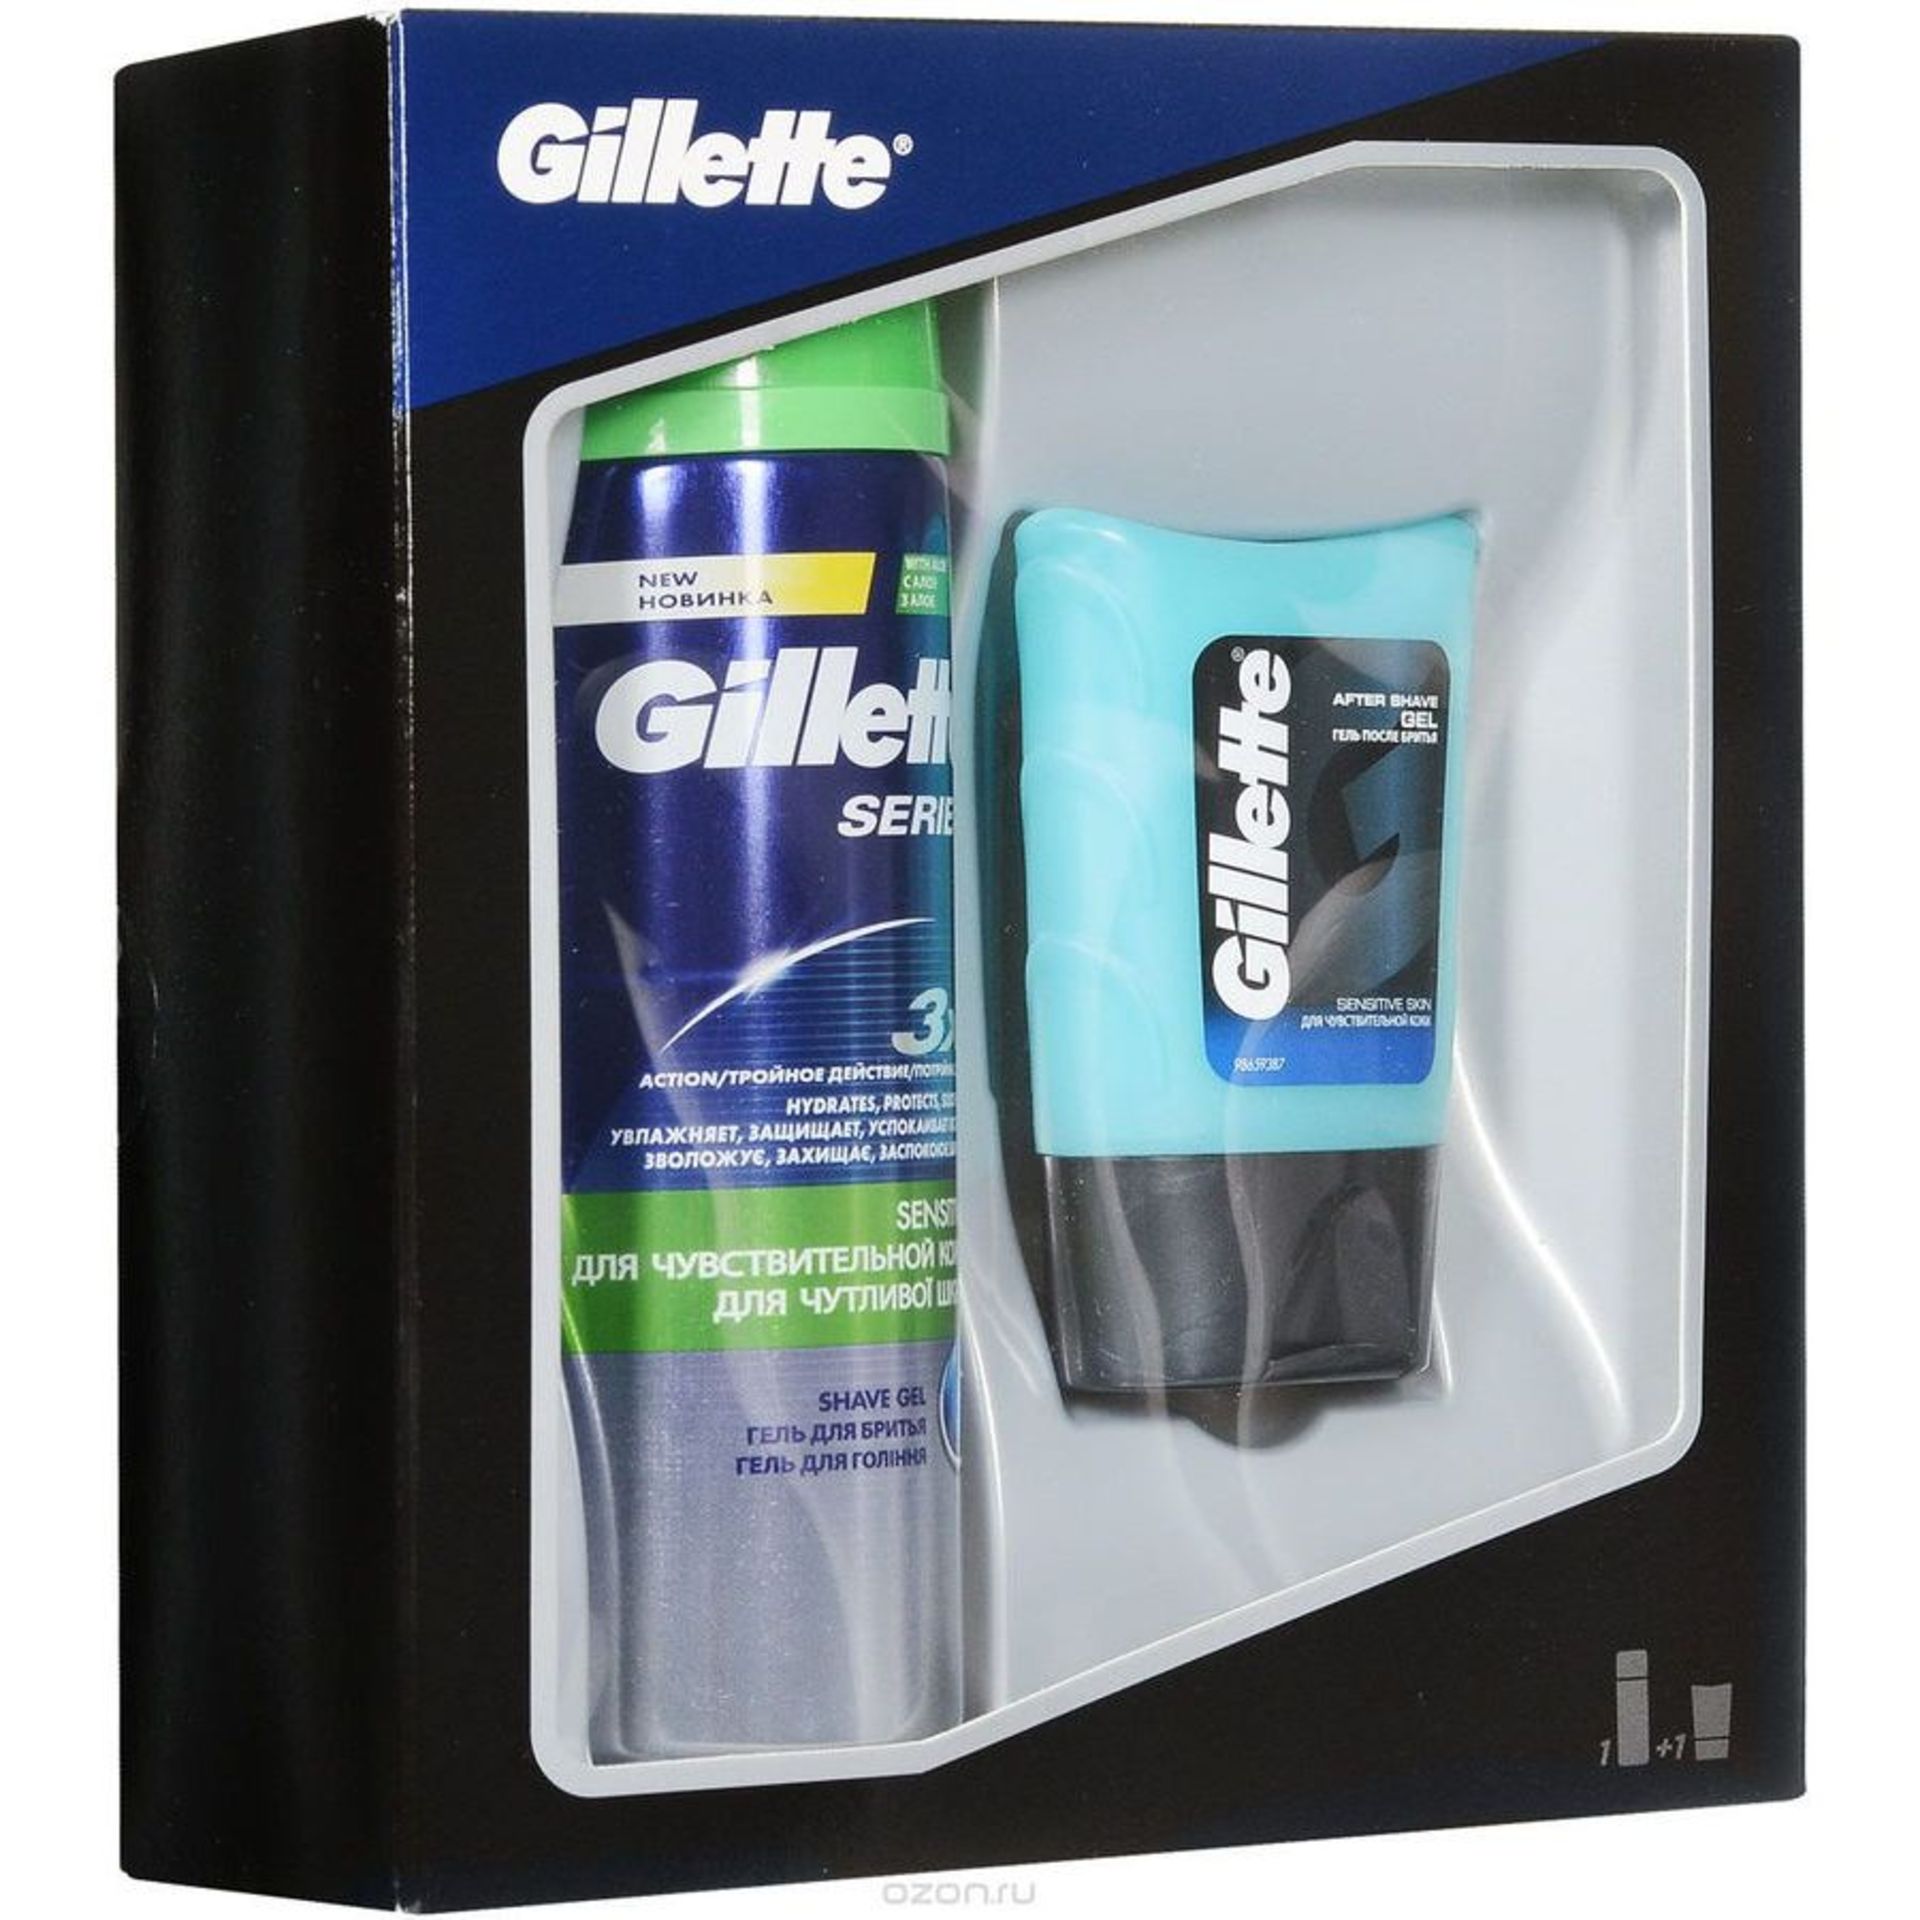 V Brand New Gillette Series Sensitive Shave Gel 200ml & Aftershave Gel For Sensitive Skin (75ml) - Image 2 of 2